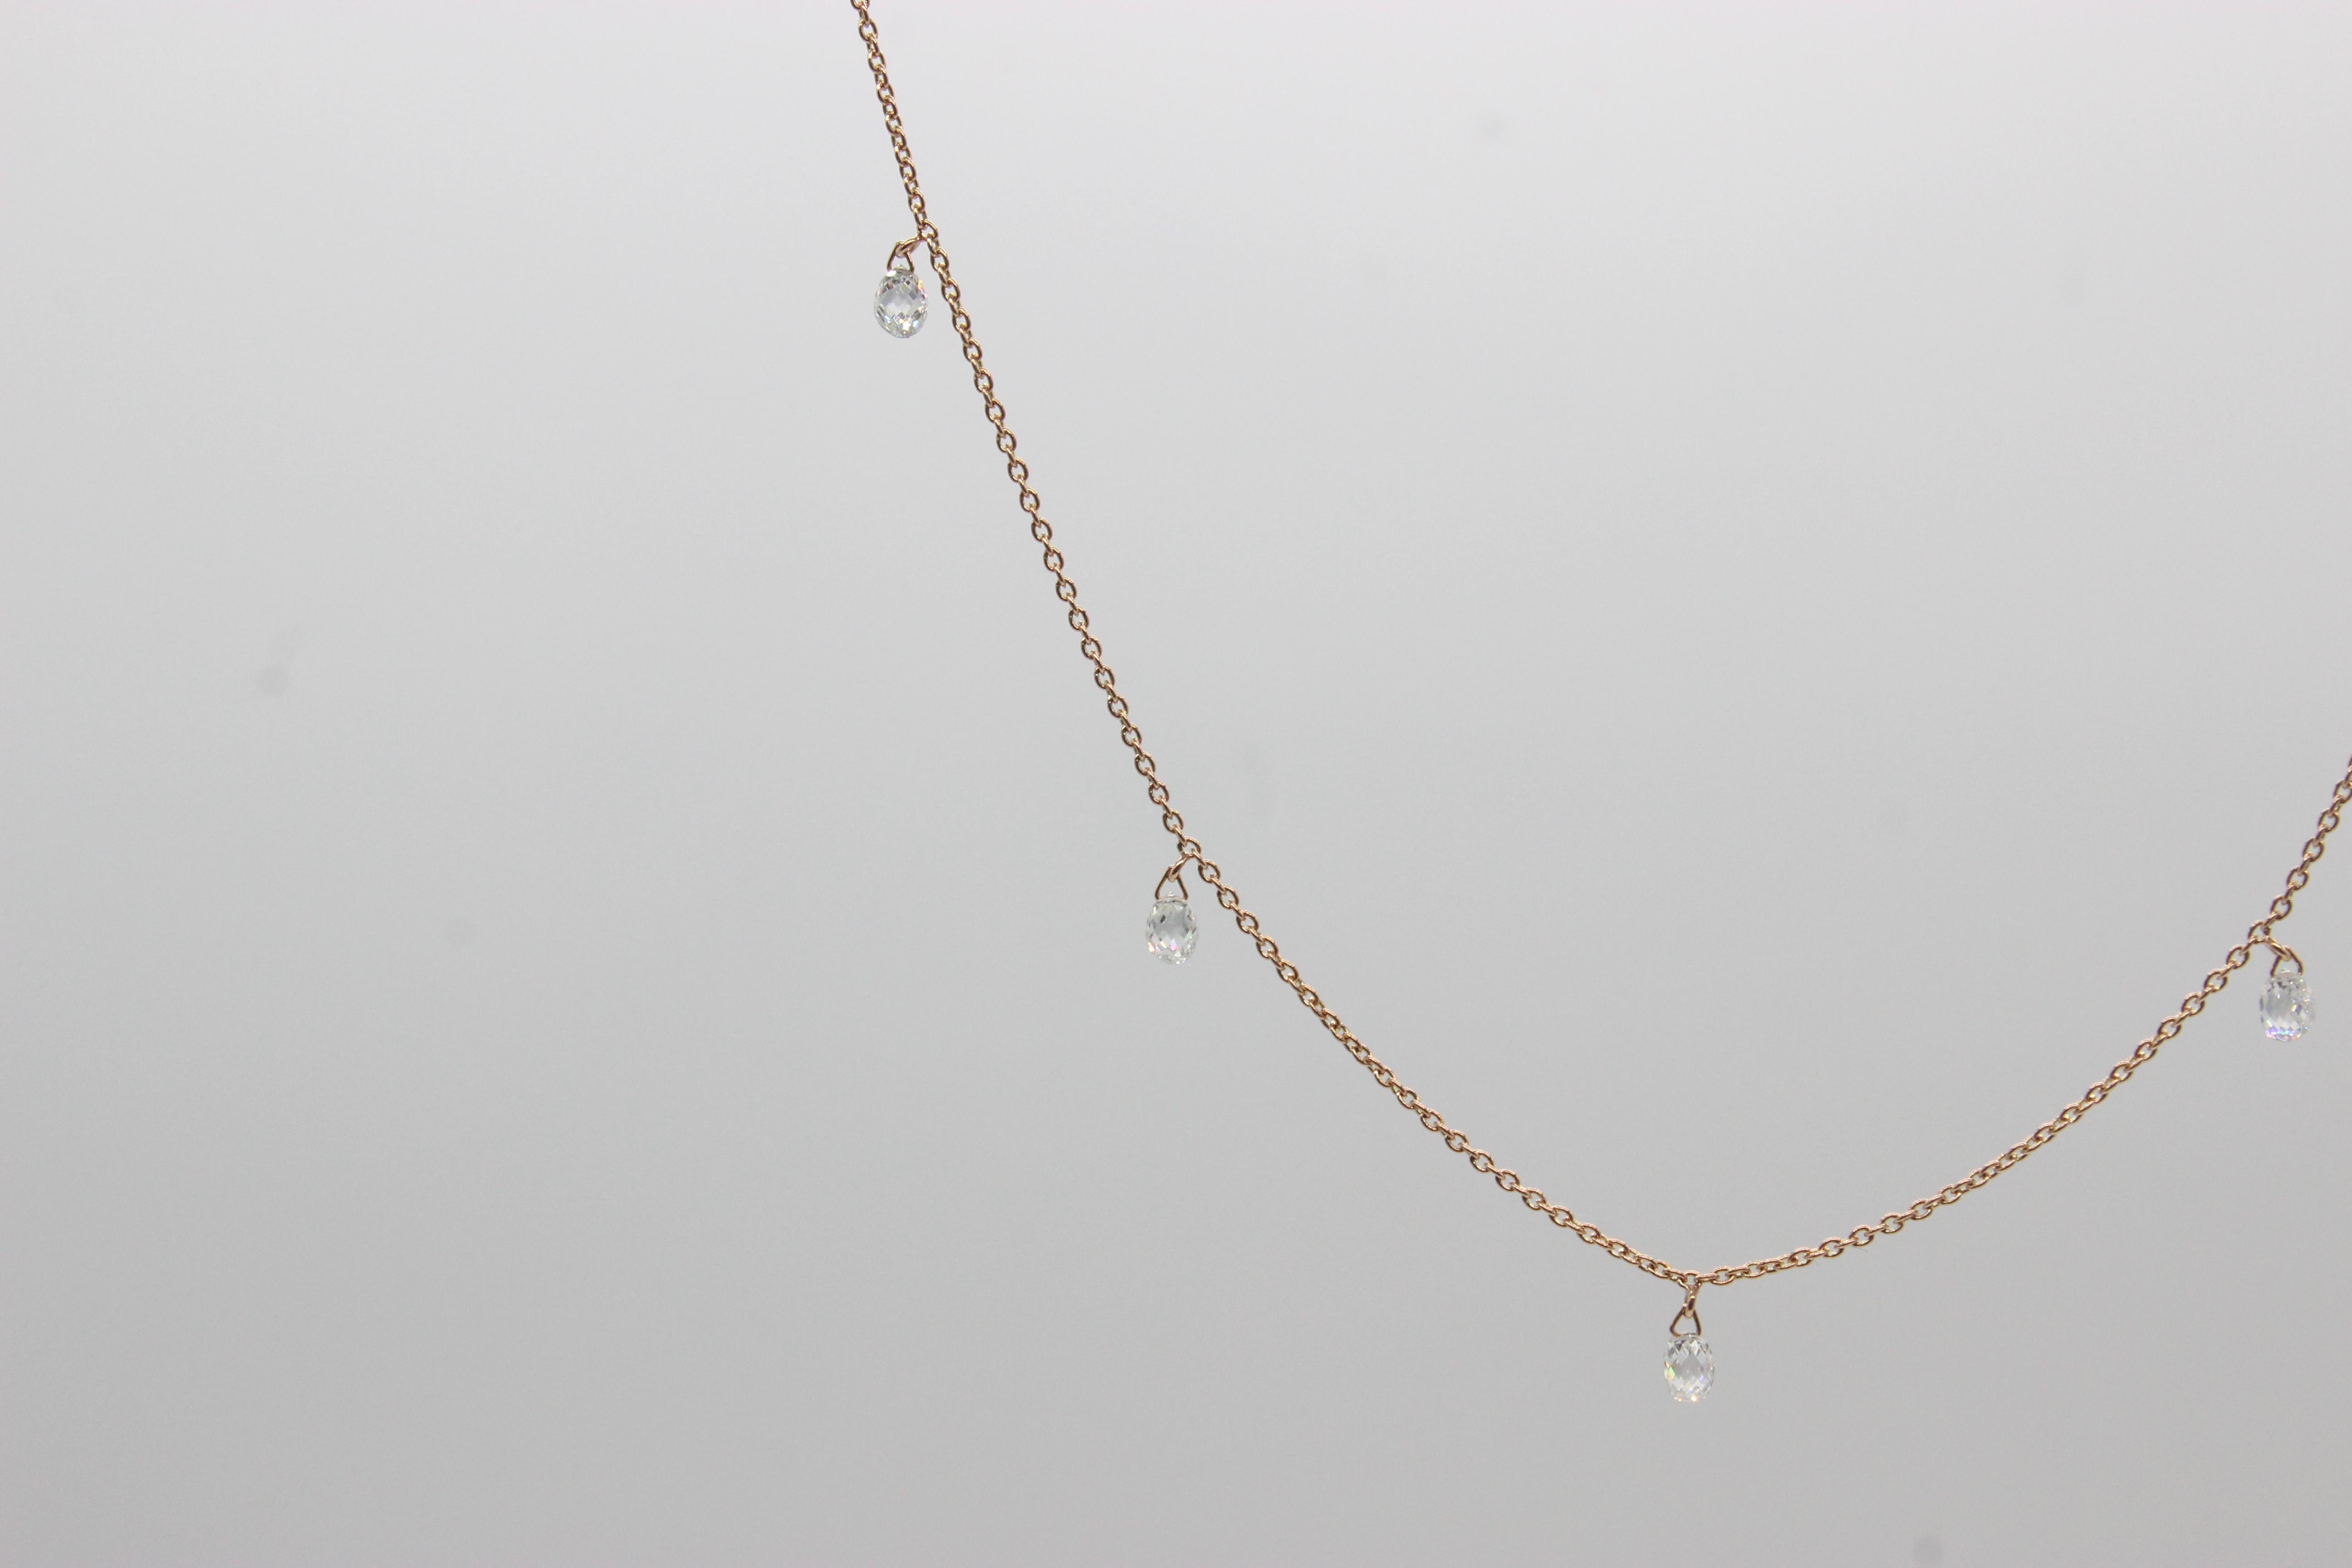 PANIM 5 Briolettes de diamants dansants Collier Mille Etoiles en or rose 18K

Les briolettes de diamant sont connues pour leur forme unique et leur brillance étincelante. La taille en briolette est un type de taille de diamant qui présente des